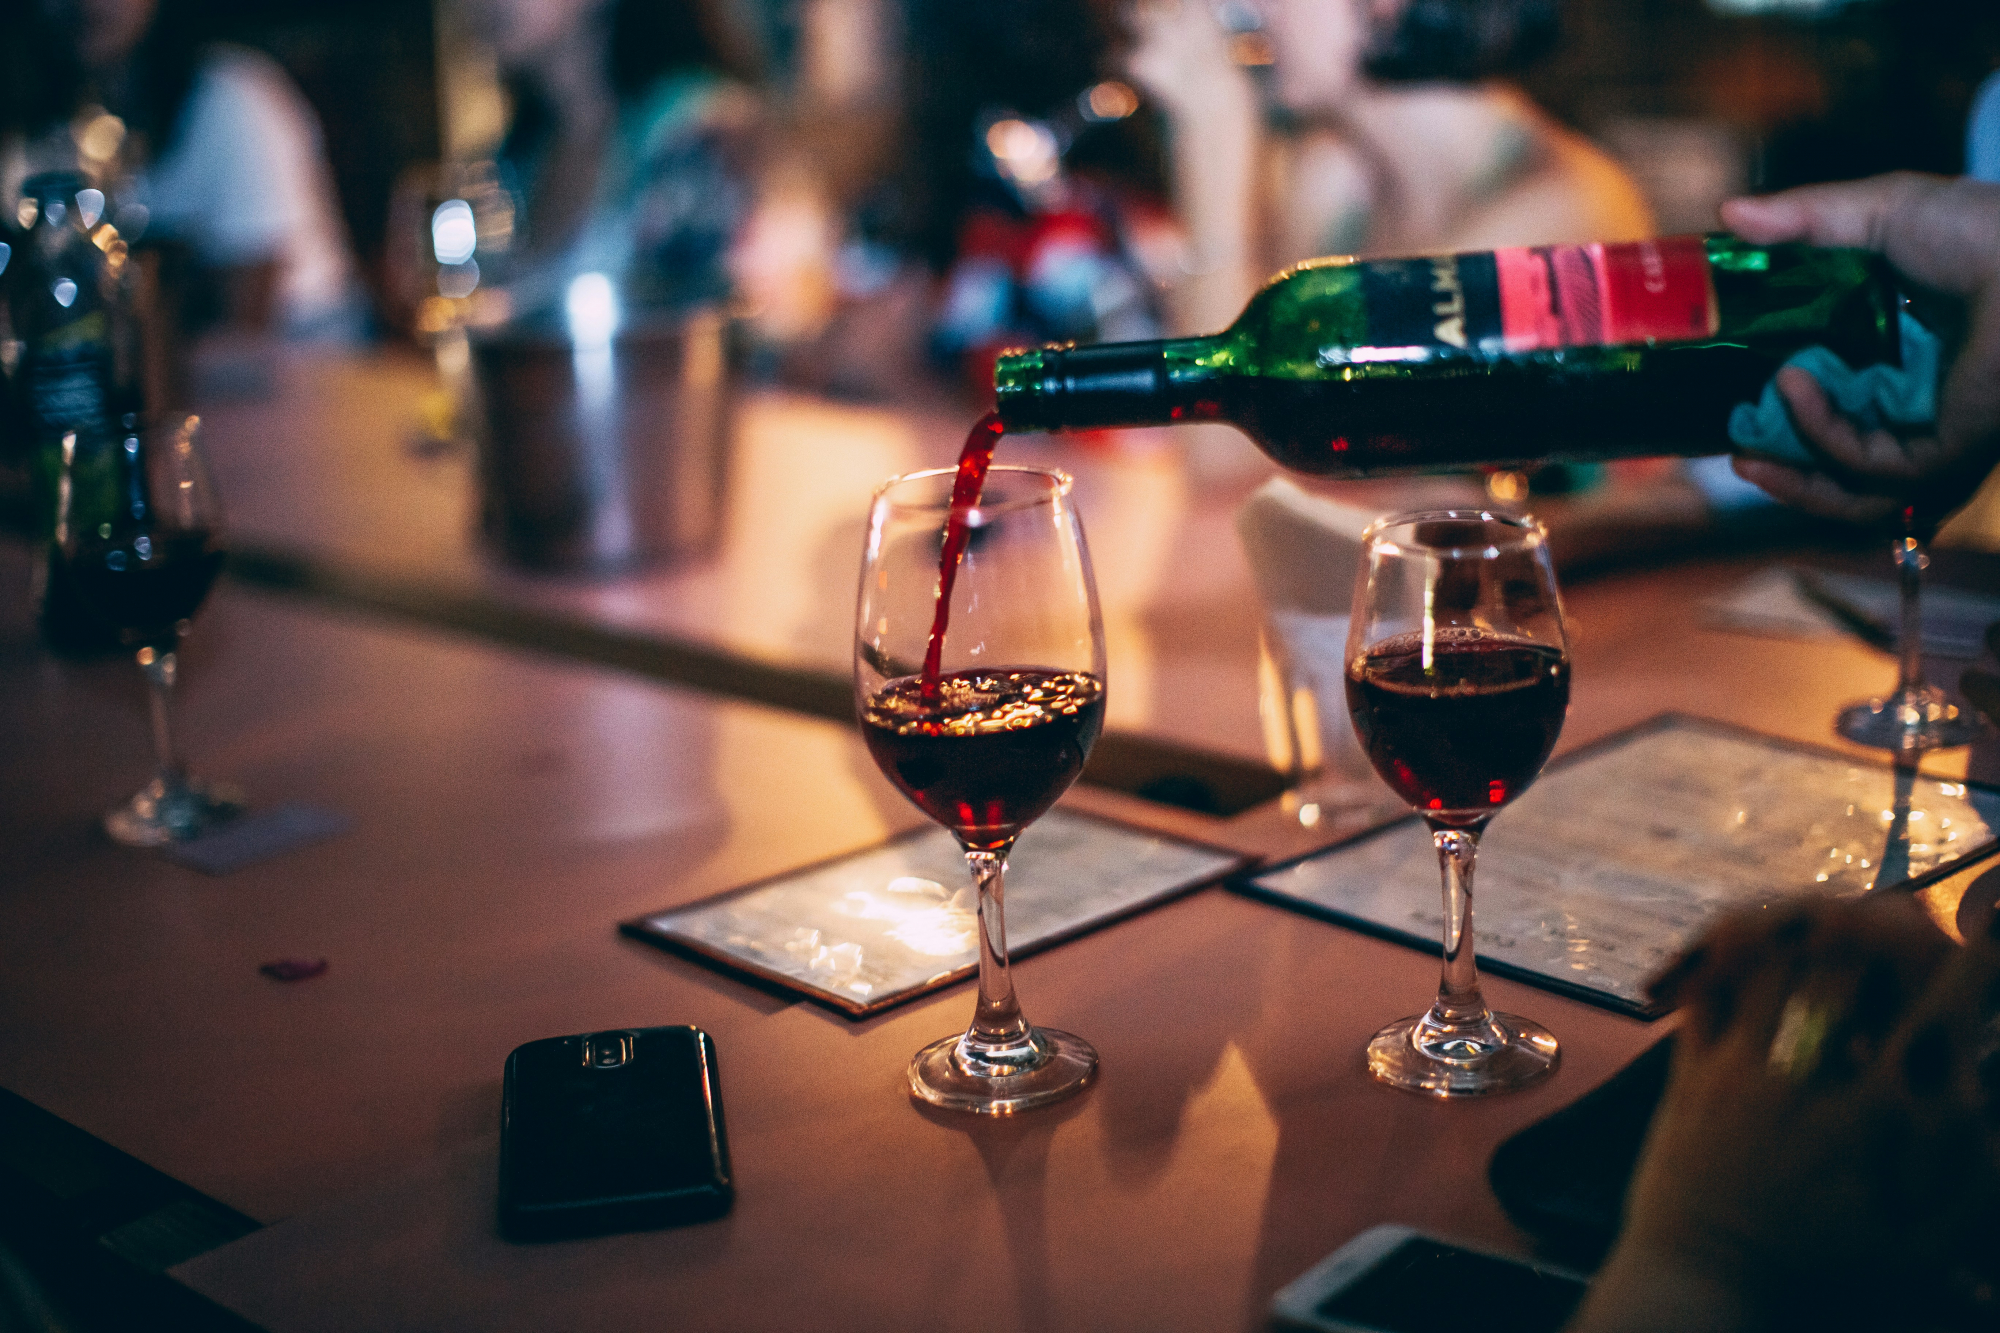 découvrez une sélection de délicieux vins rouges issus des meilleurs vignobles, pour des moments de dégustation inoubliables.